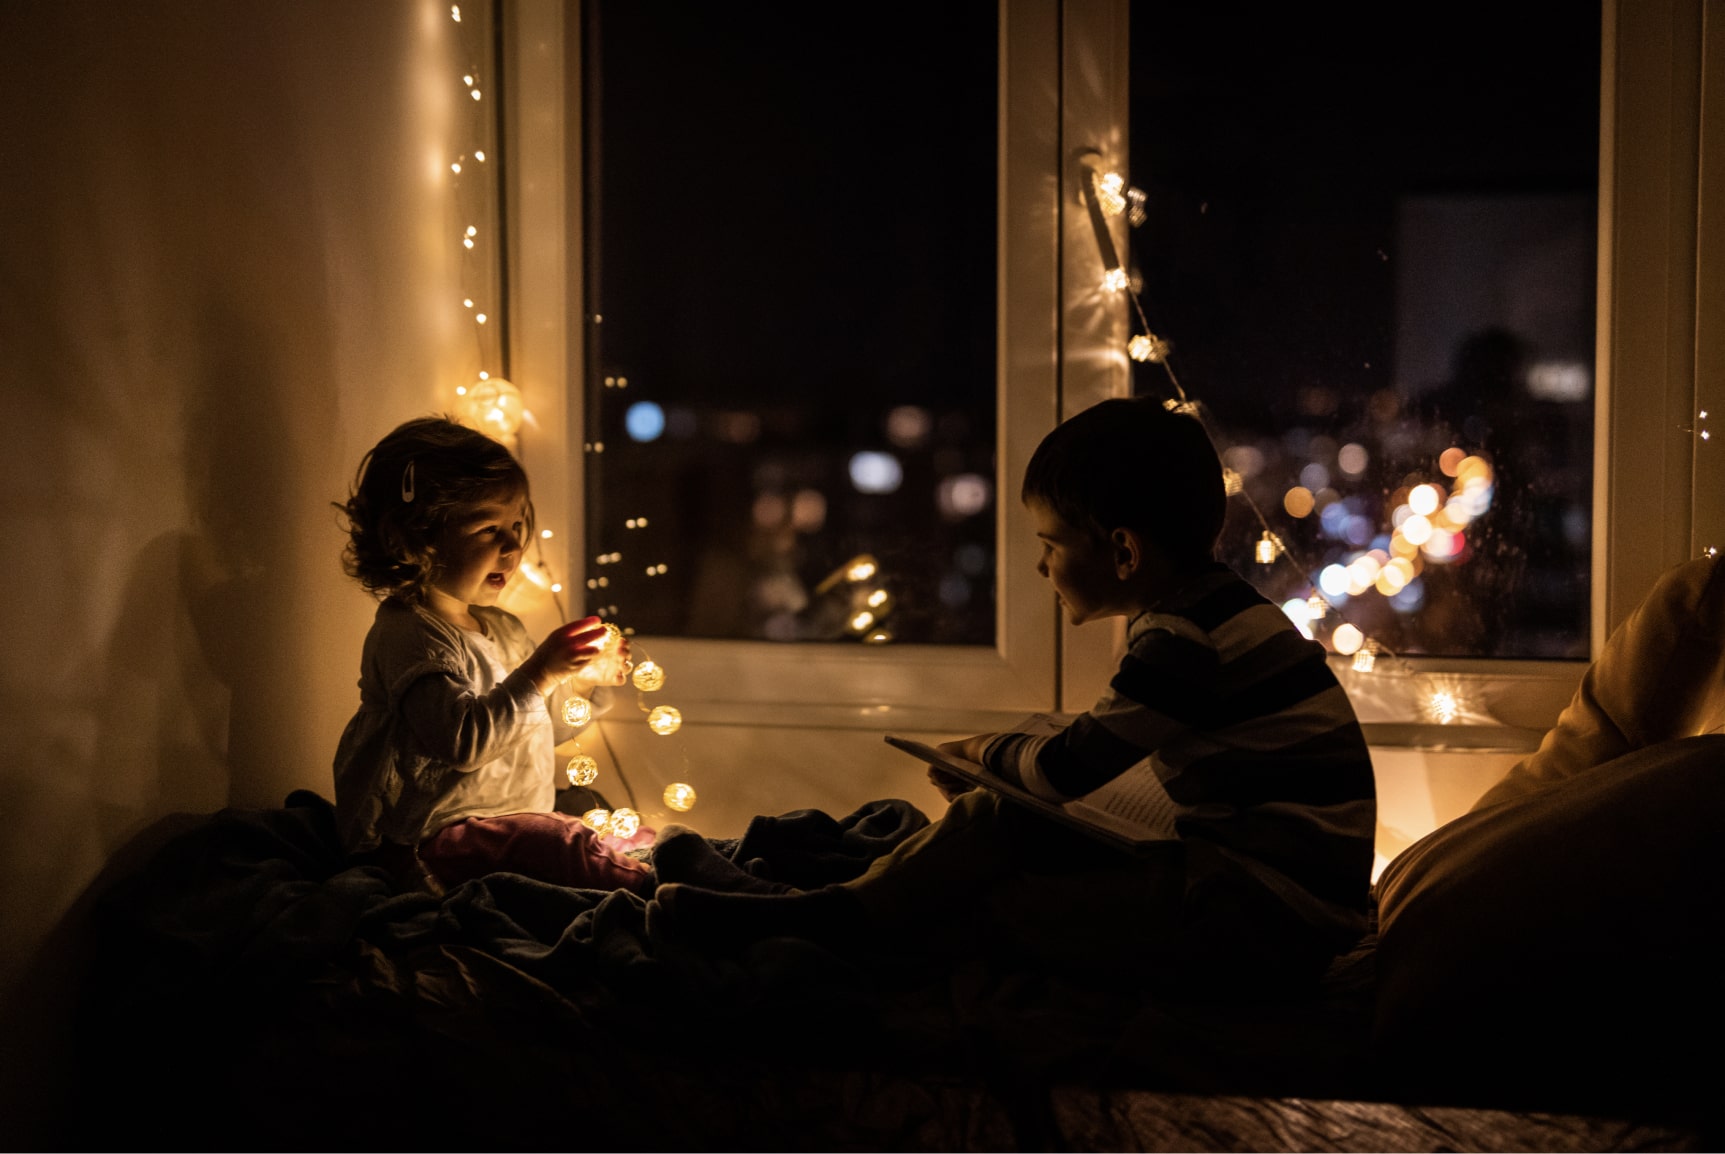 2 children playing under string lights in a darkend room